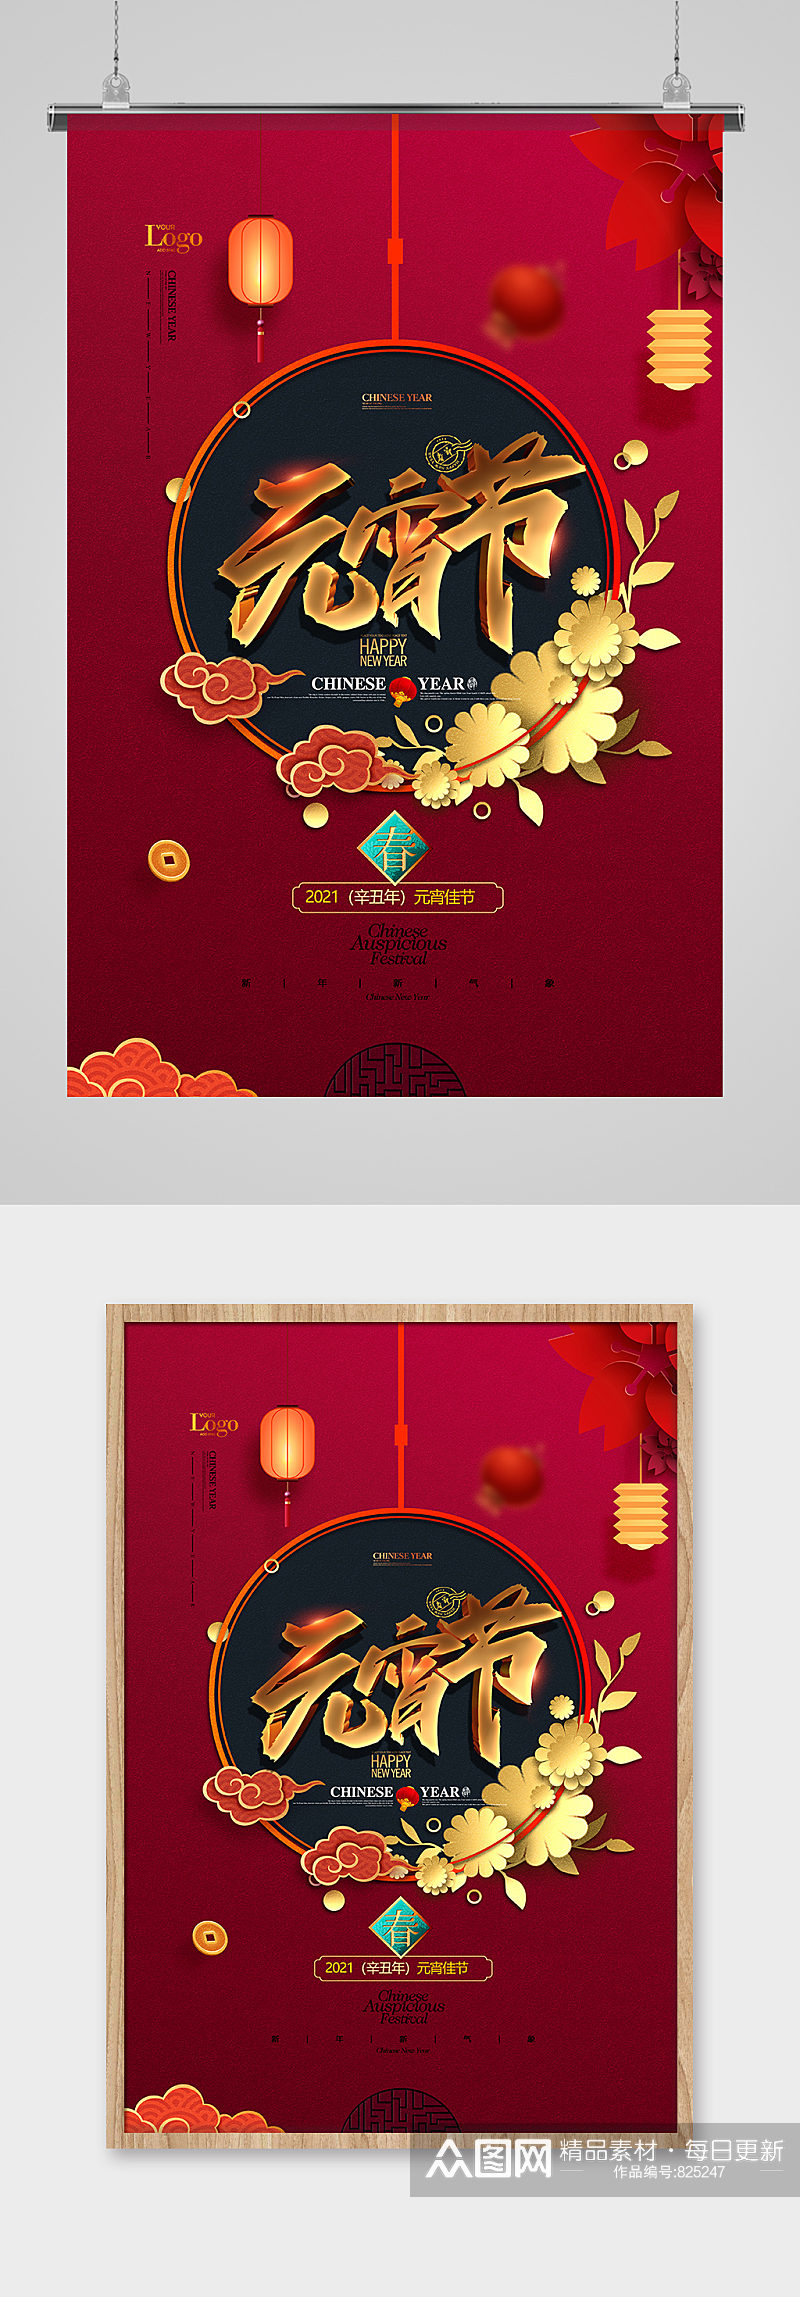 红色中国风正月十五元宵节海报设计素材